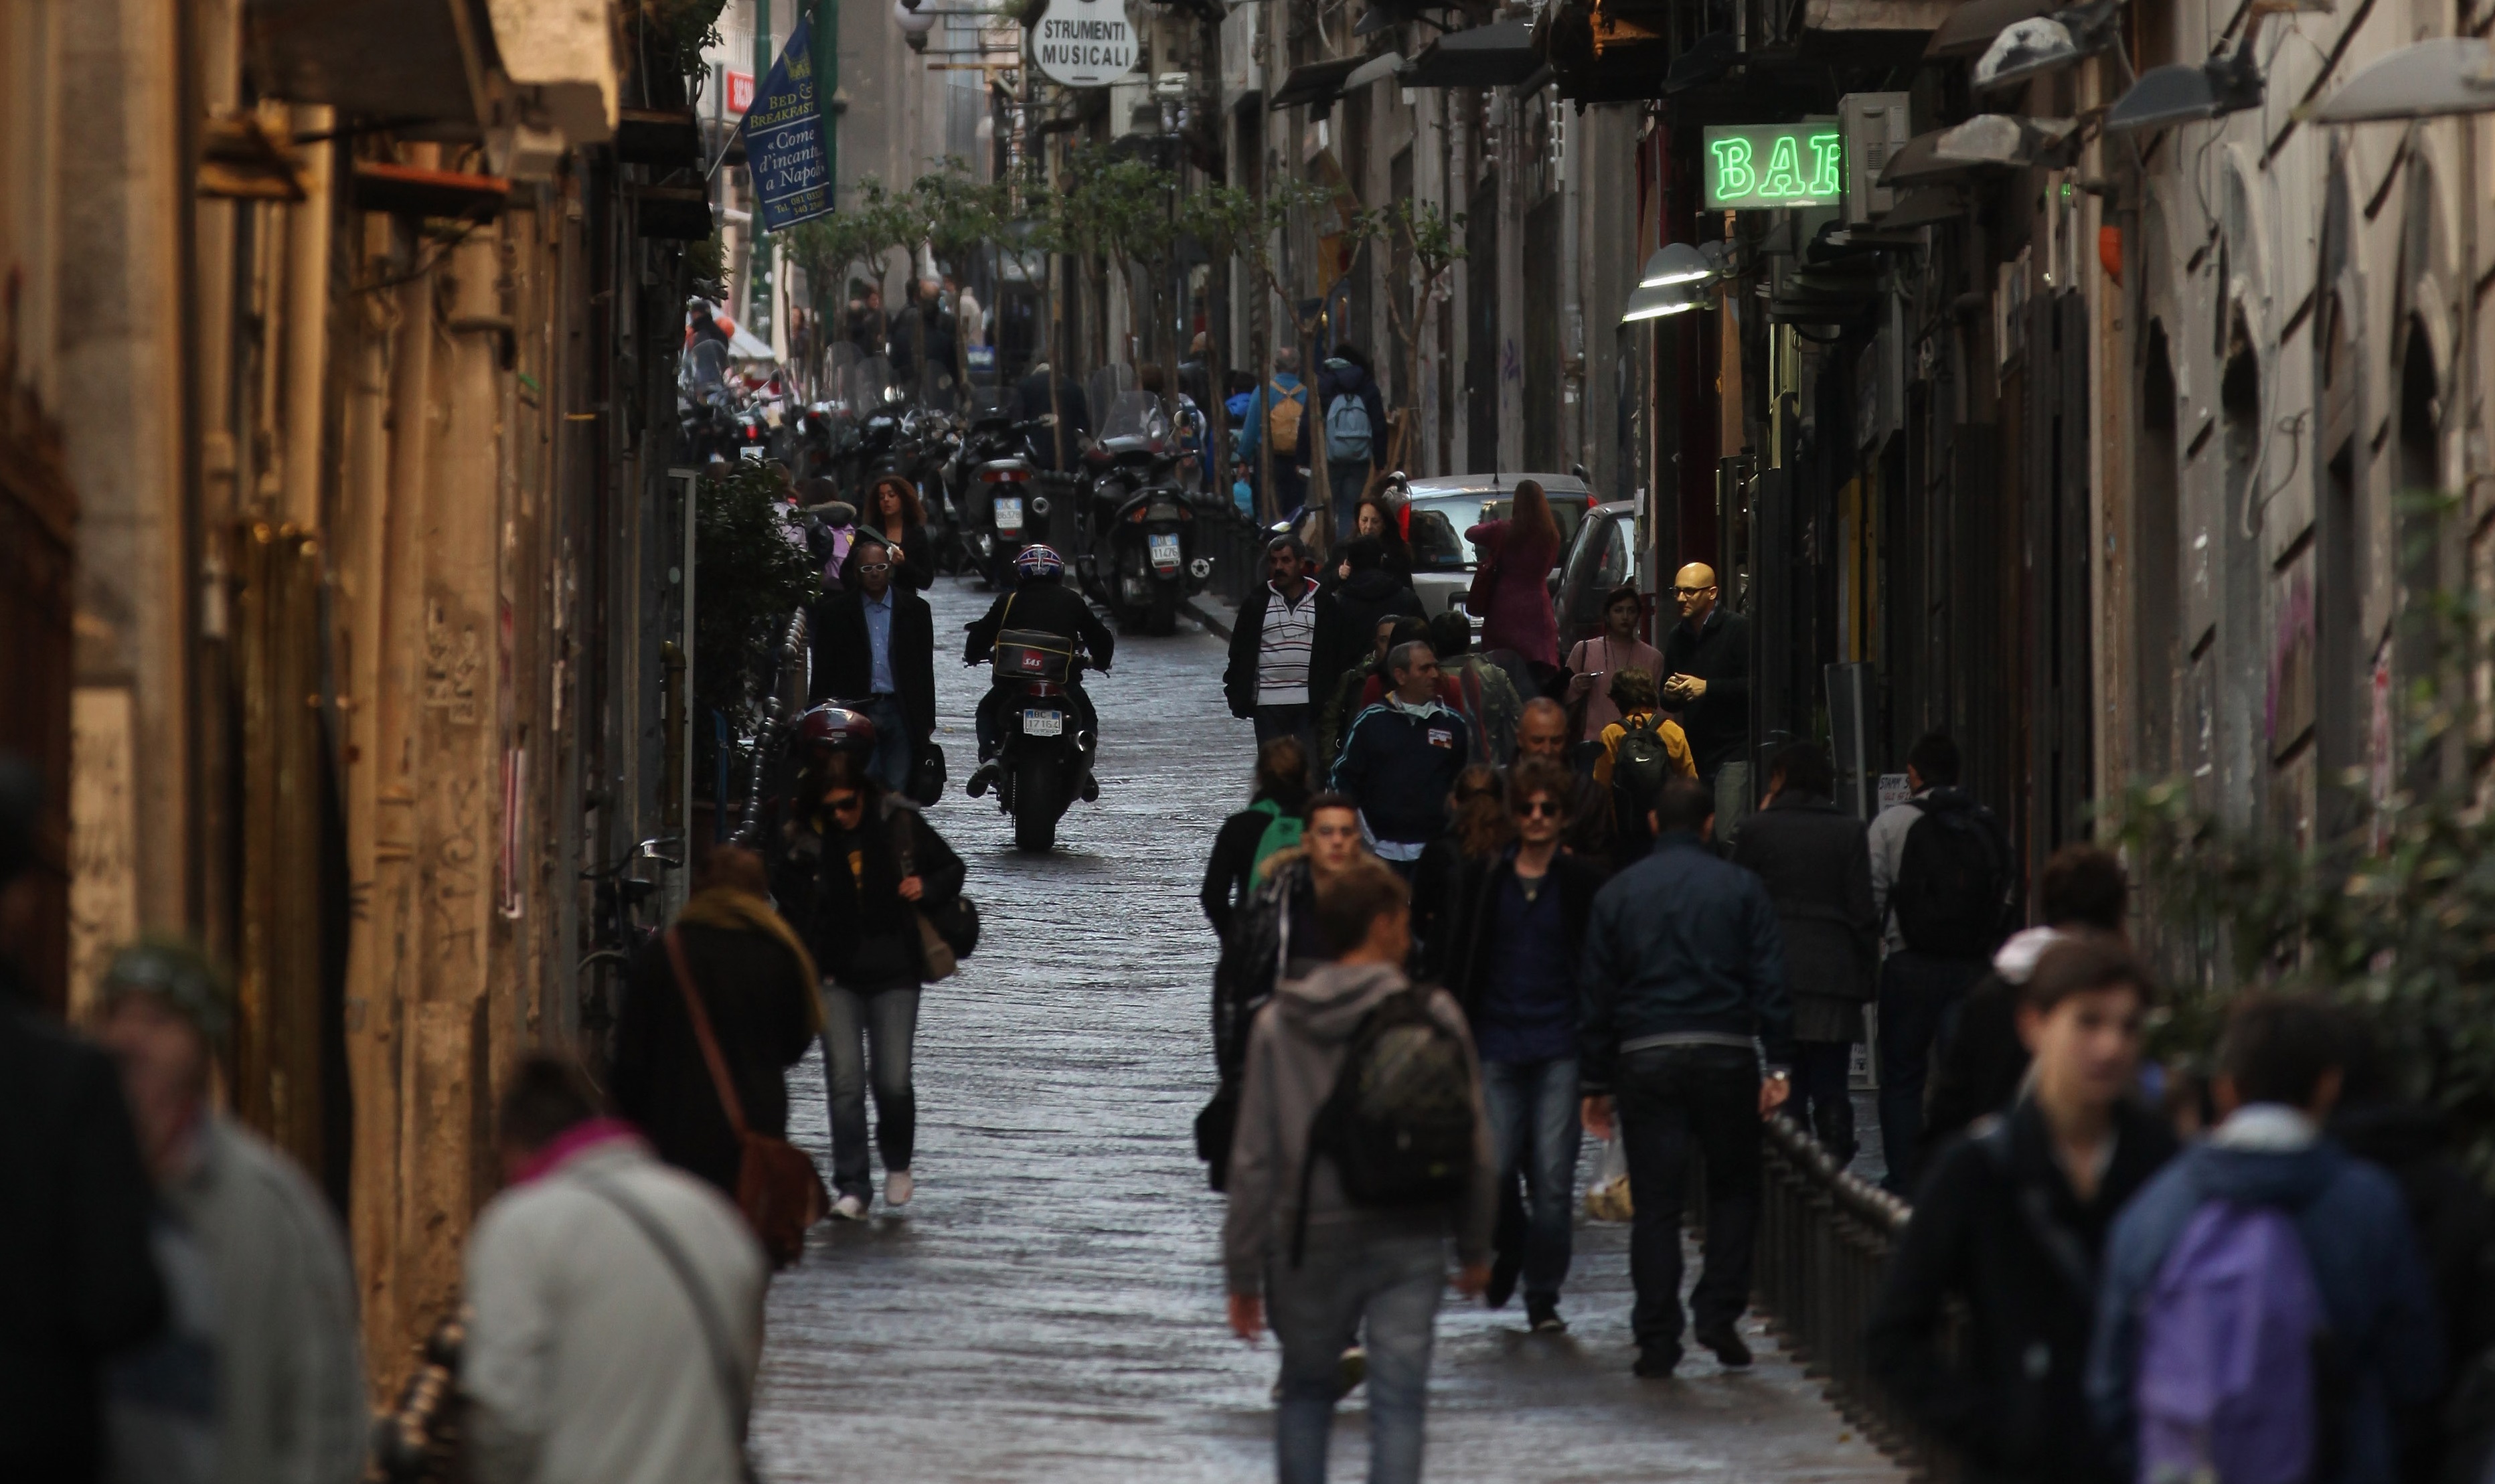 Cum sfidează Napoli toată Italia. Imagini cu străzi pline de oameni care nu respectă măsurile de protecție